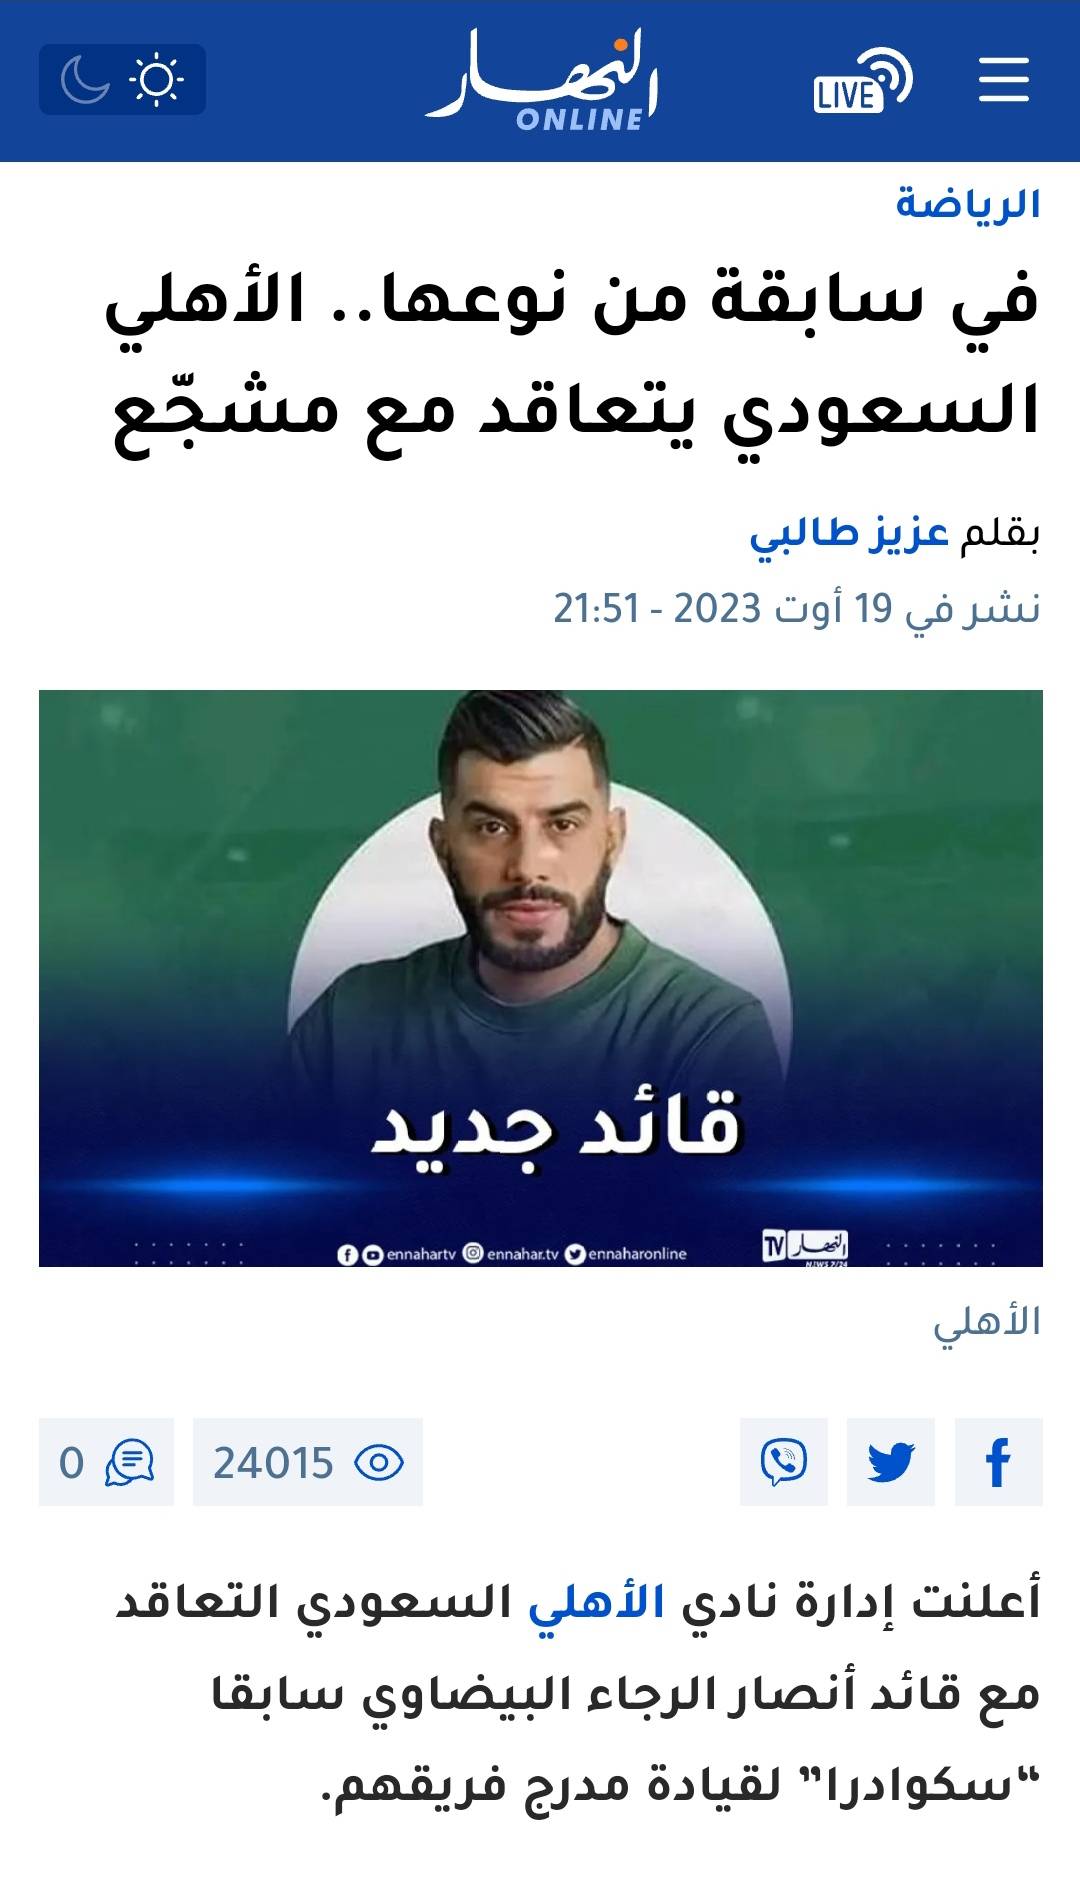 Al Ahli d'Arabie Saoudite, le club de Riyad Mahrez, a-t-il vraiment recruté des supporters ? 3